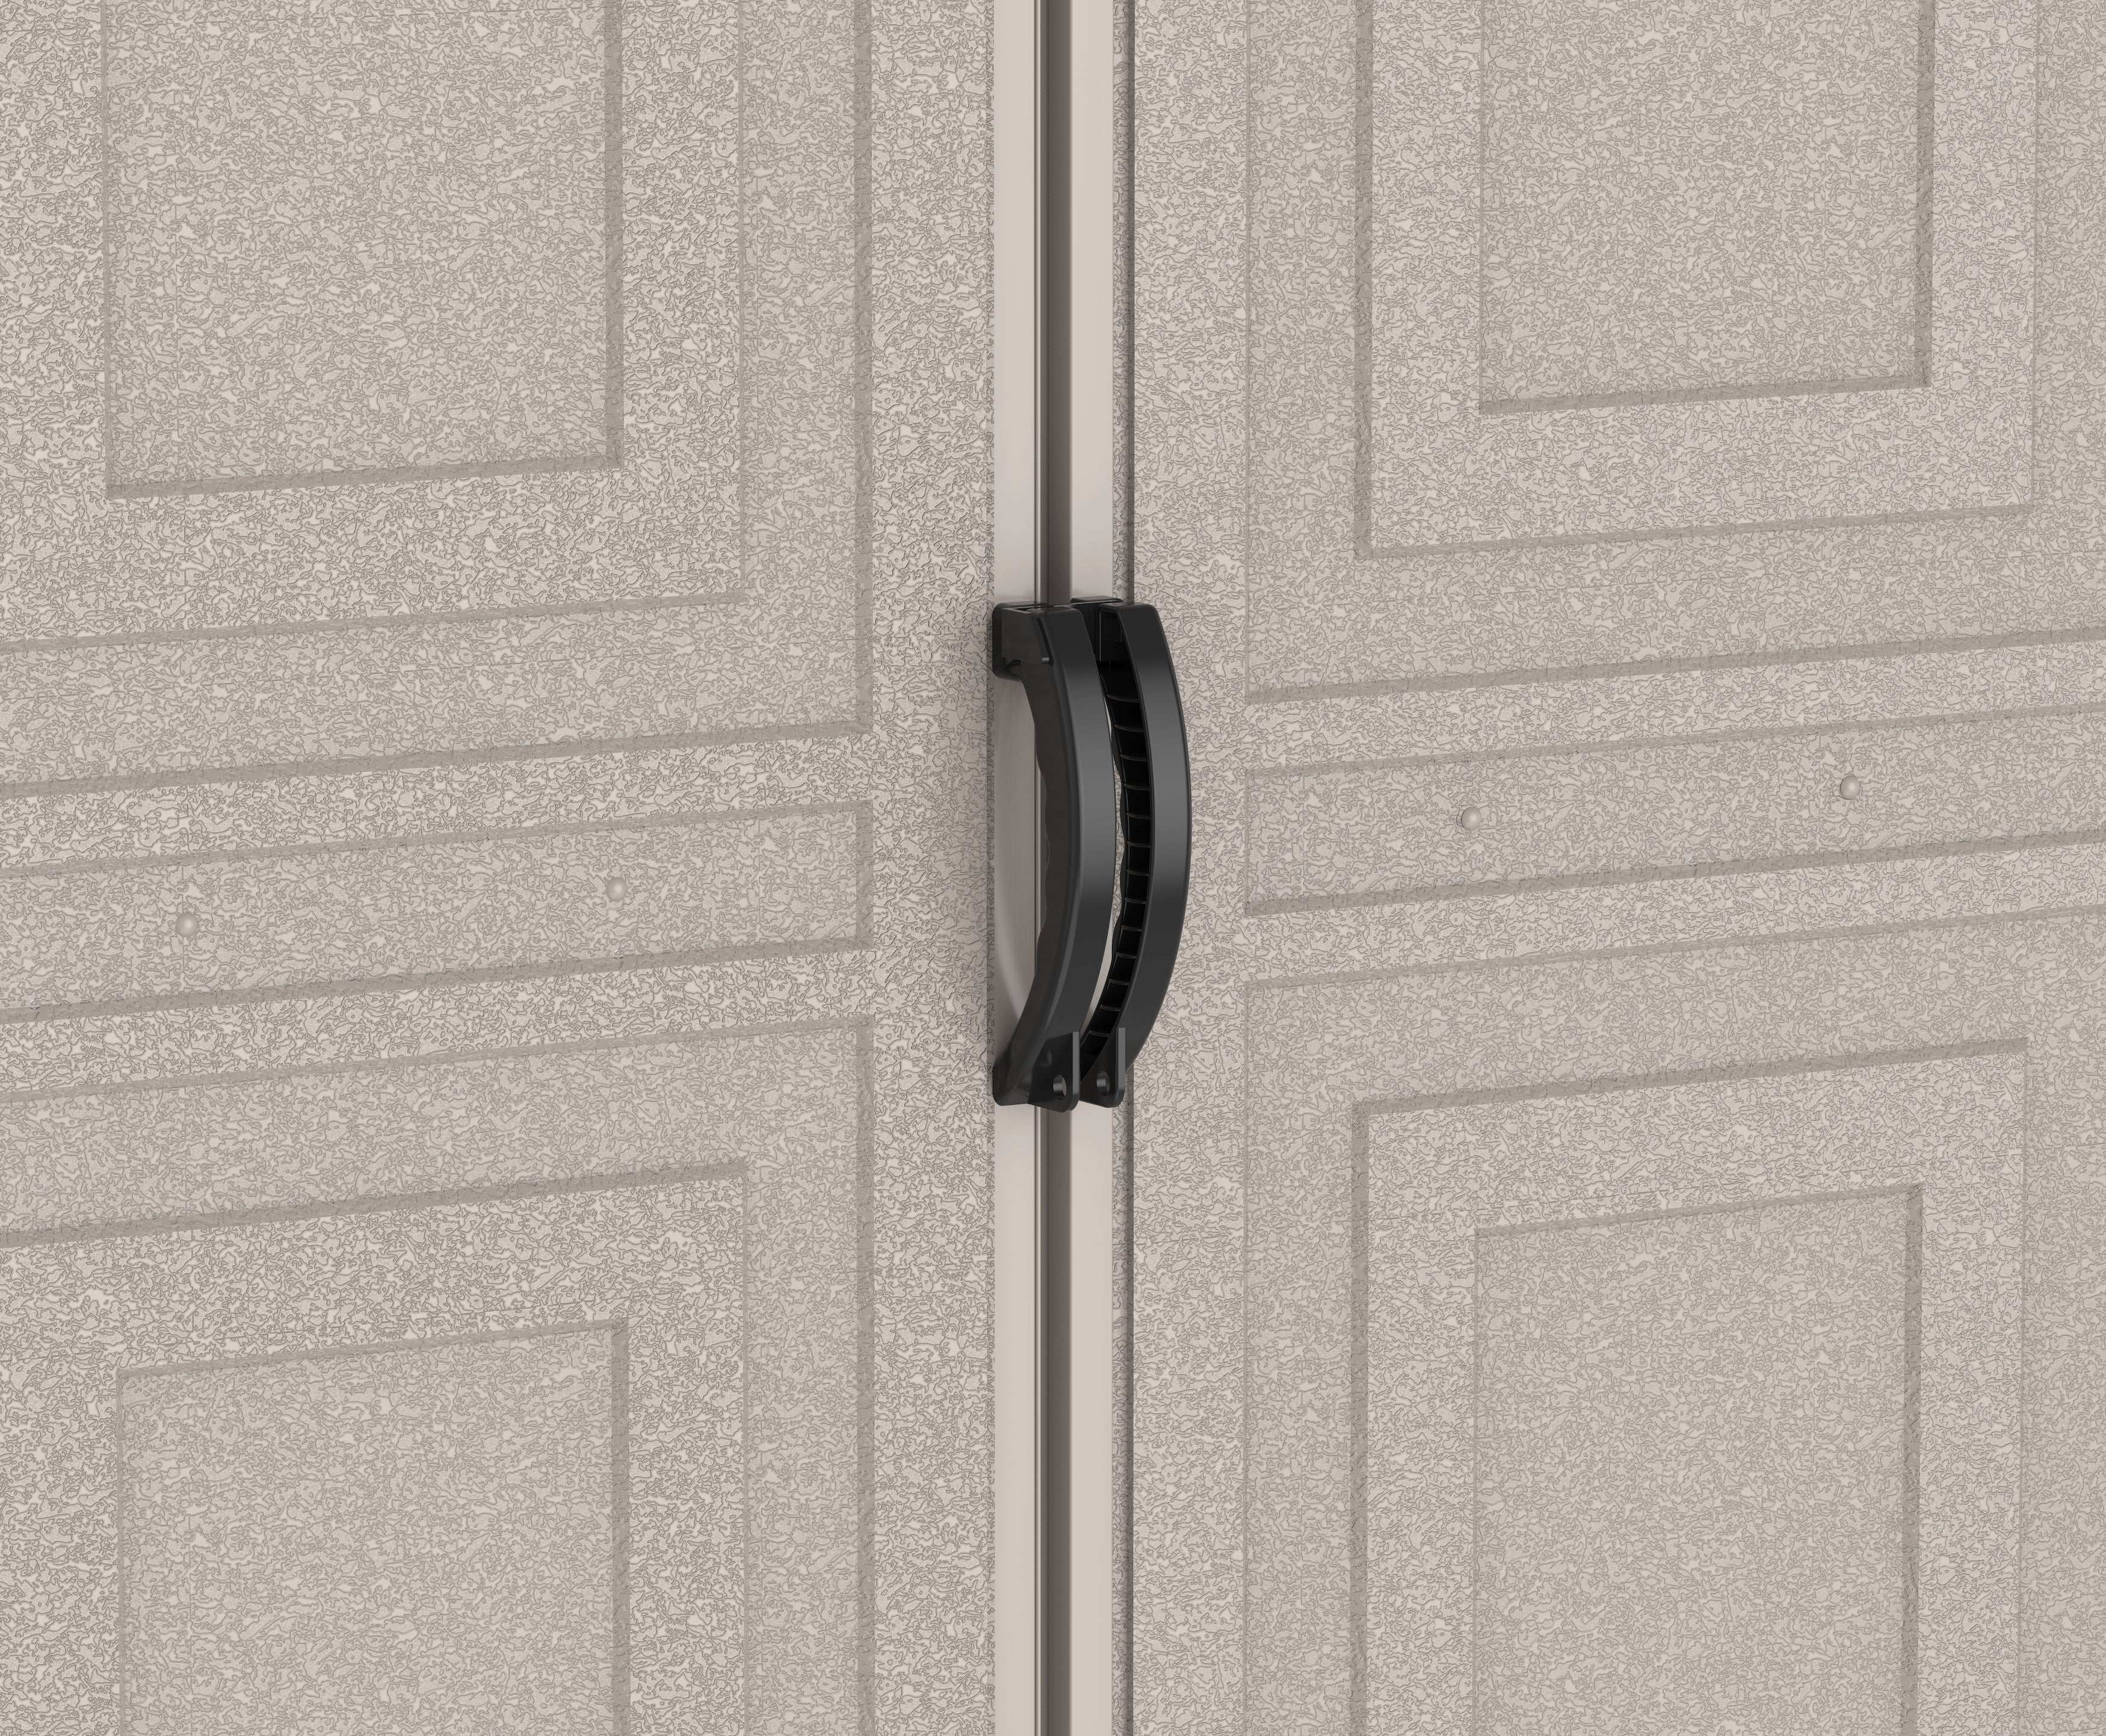 Duramax Vinyl Garage 10.5x23 w/ Foundation 2 Windows 15326 close up of locking outer door handle